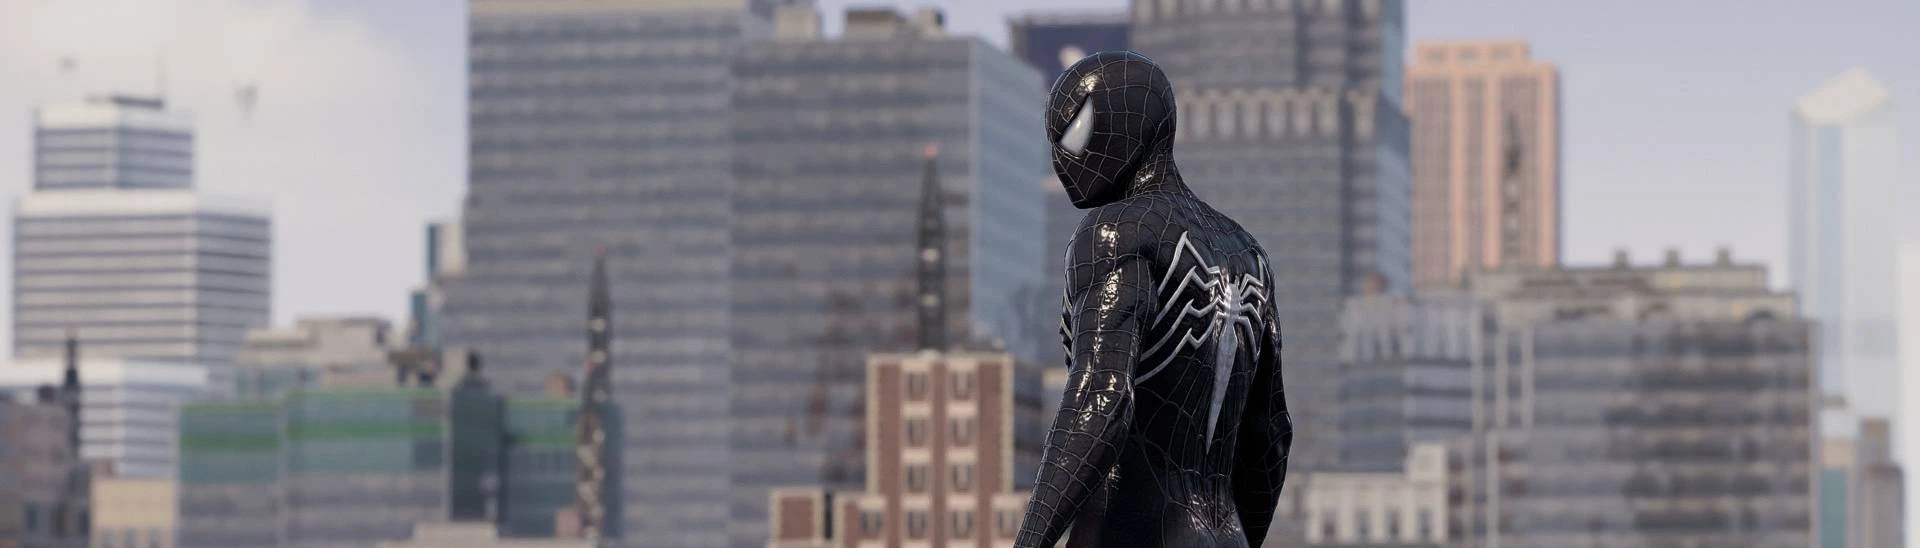 Reza's Raimi Surge Symbiote Black Suit at Marvel’s Spider-Man ...